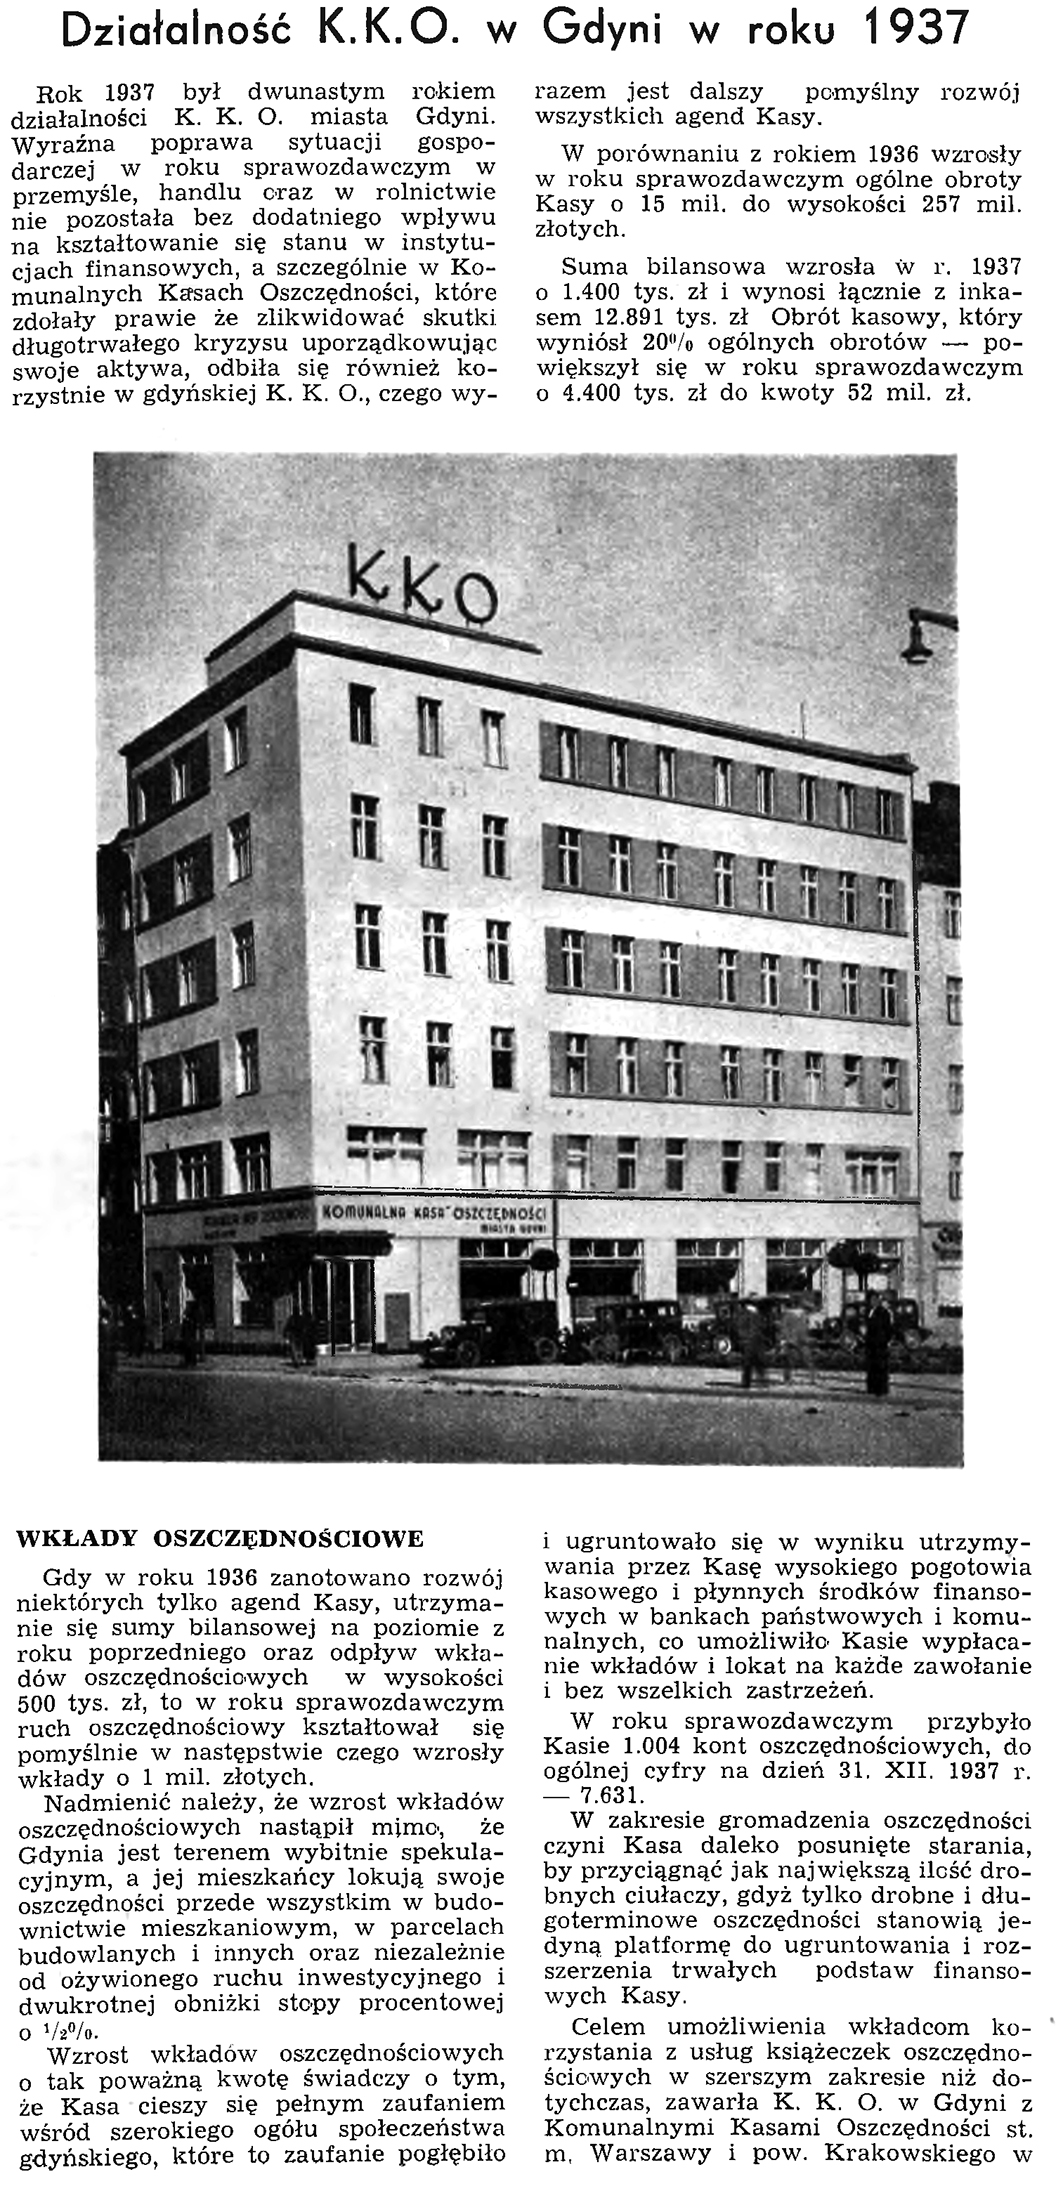 Działalność K. K. O. w Gdyni w roku 1937 